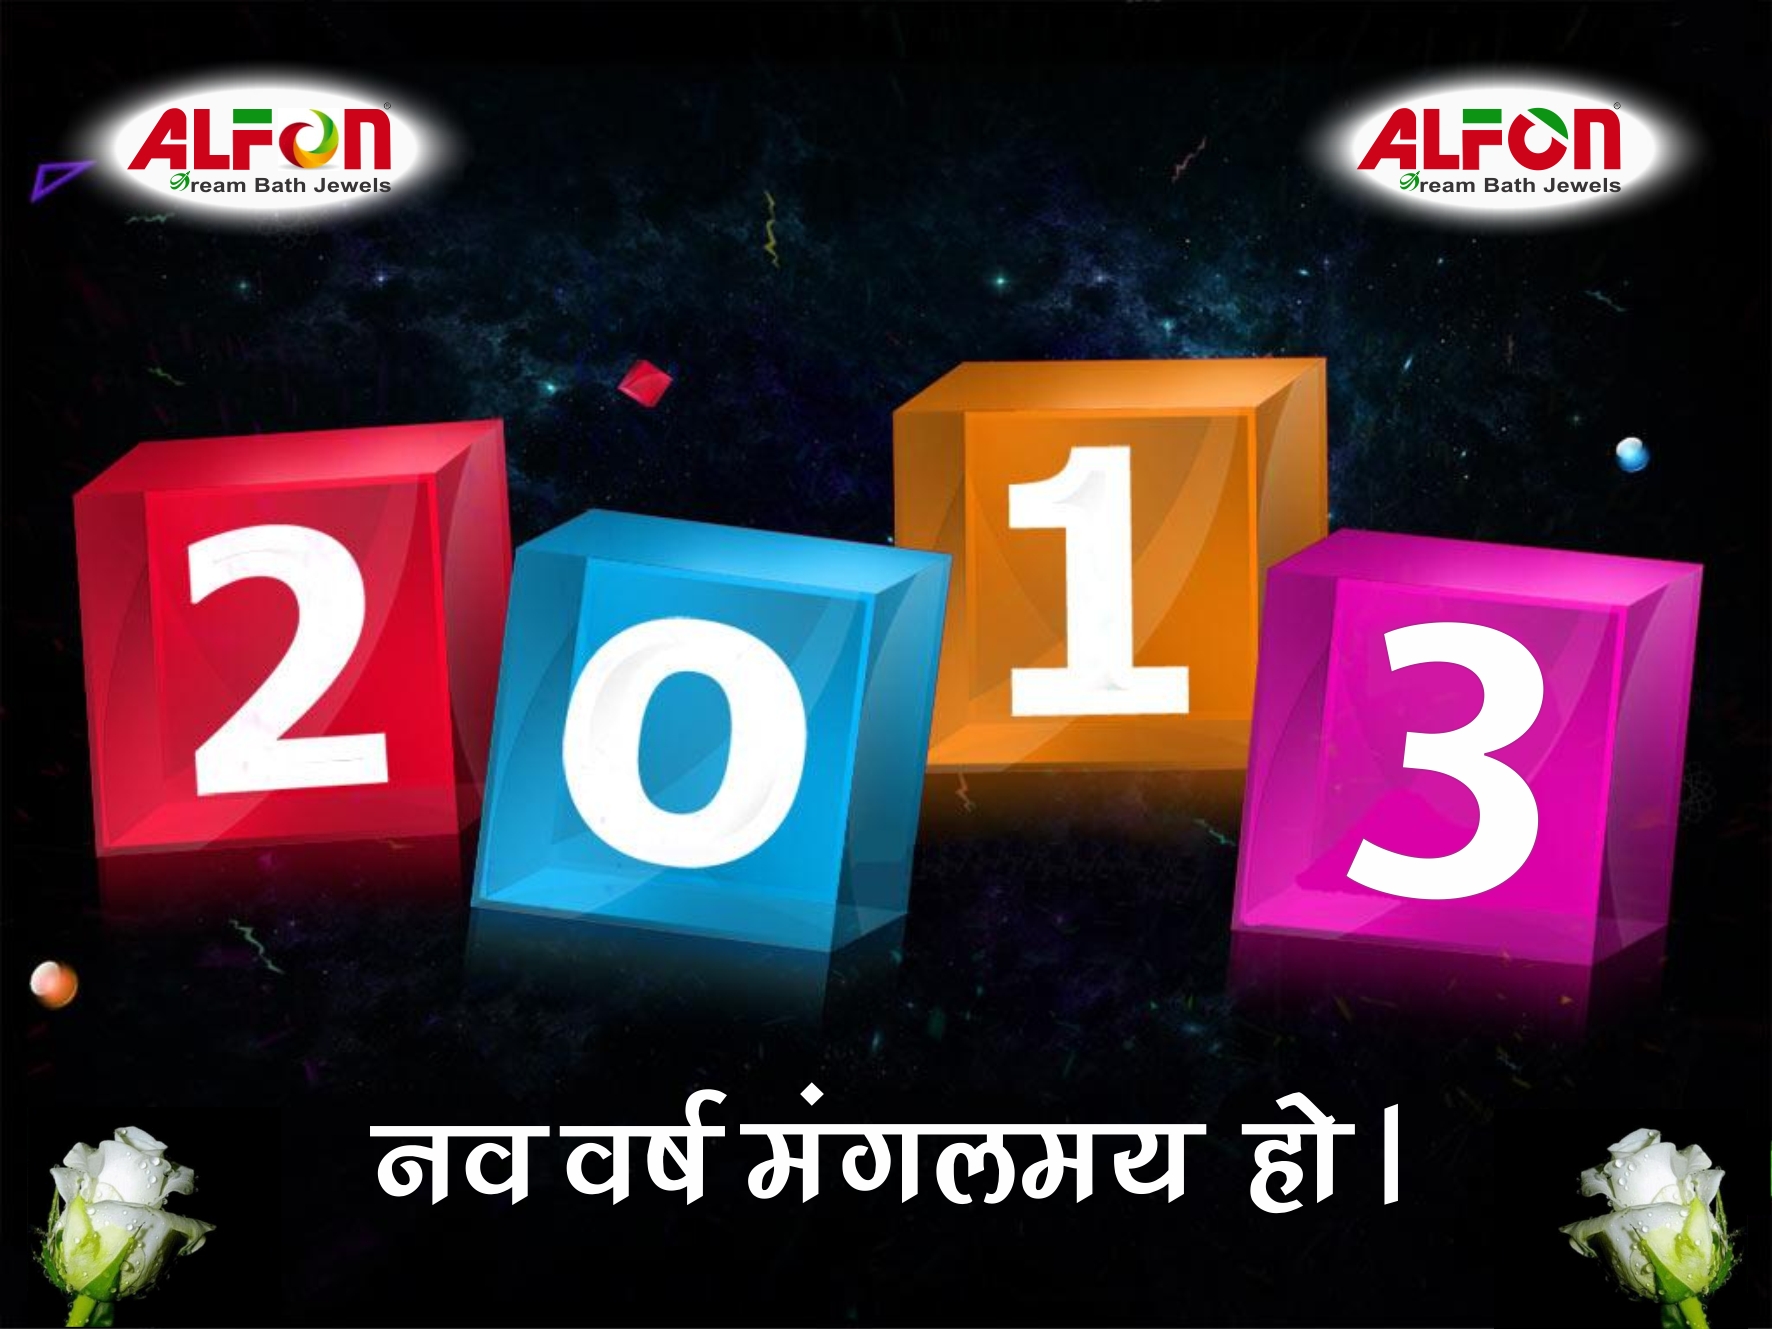 خلفيات رأس السنة 2013 - خلفيات العام الجديد 2013